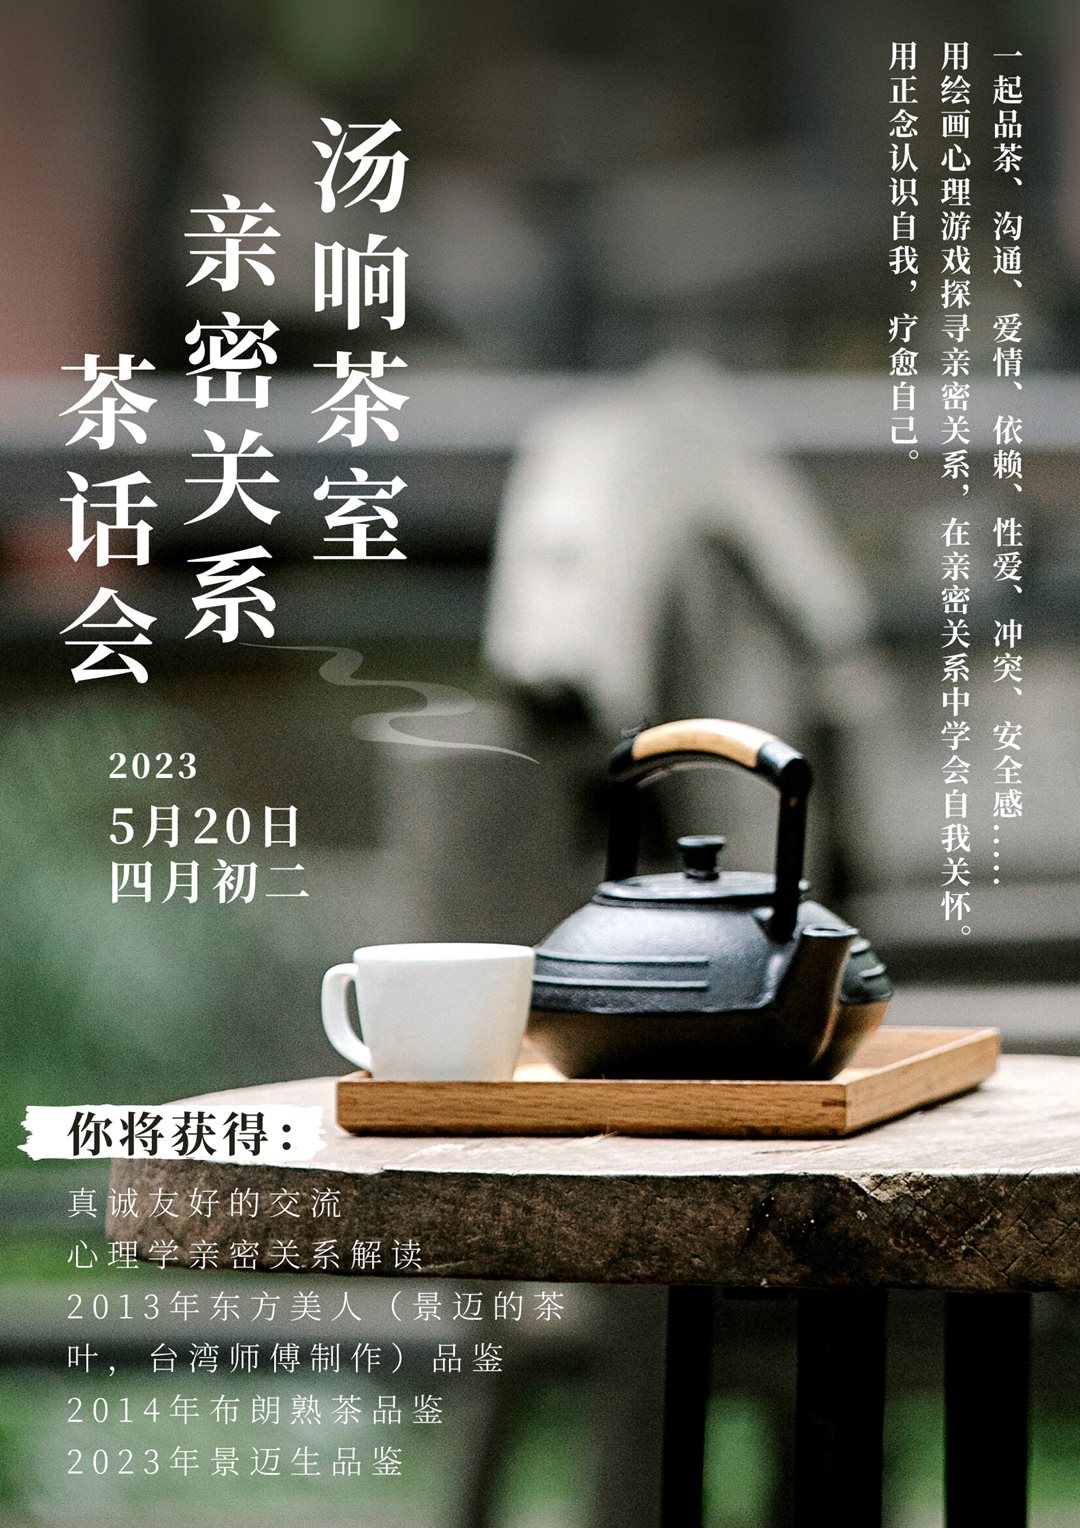 绿黑色茶壶古风图片照片重阳节房地产宣传中文海报 (2).png